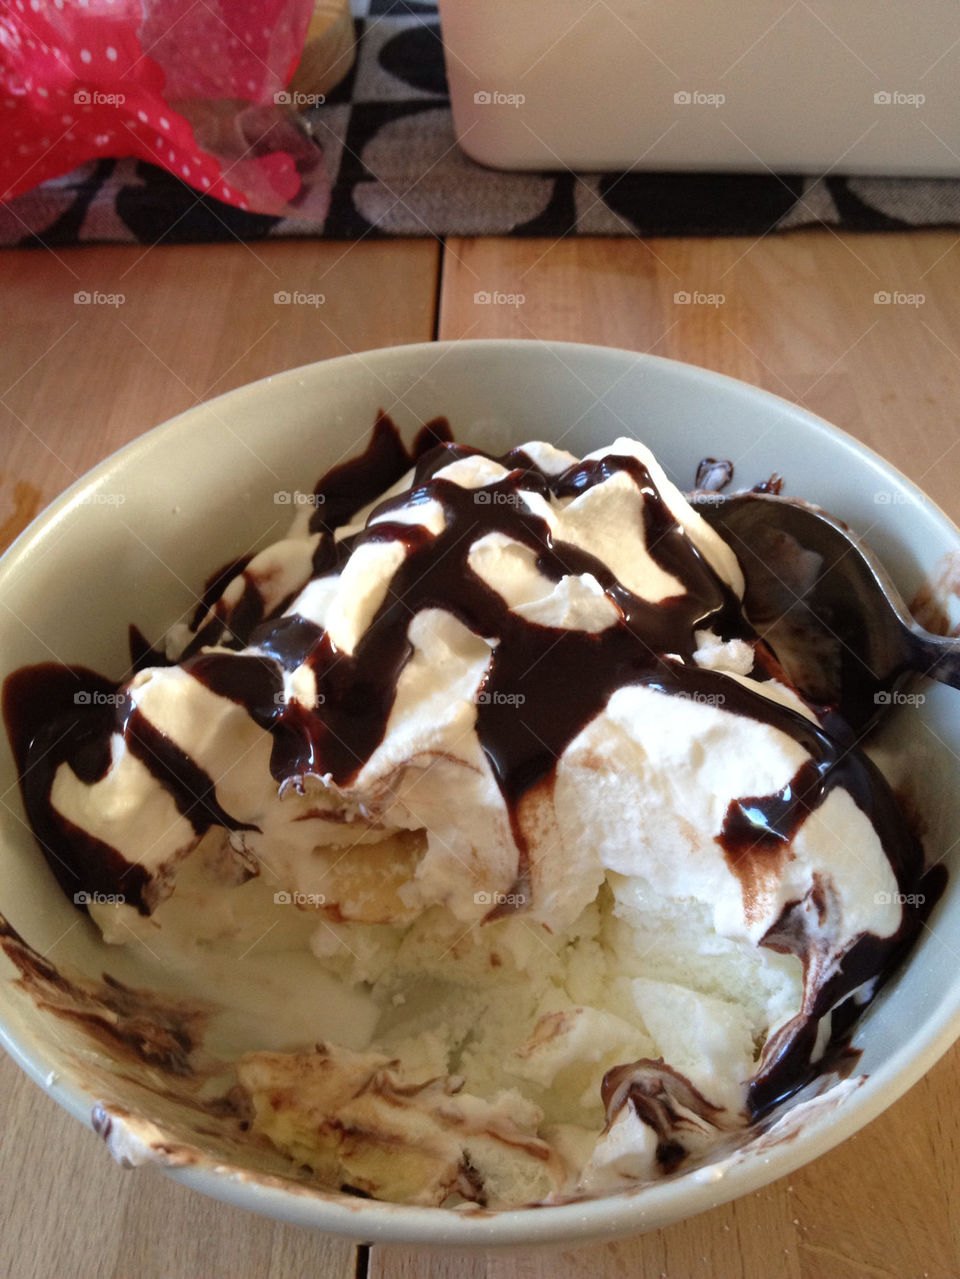 sweden cream chocolate dessert by casperlo